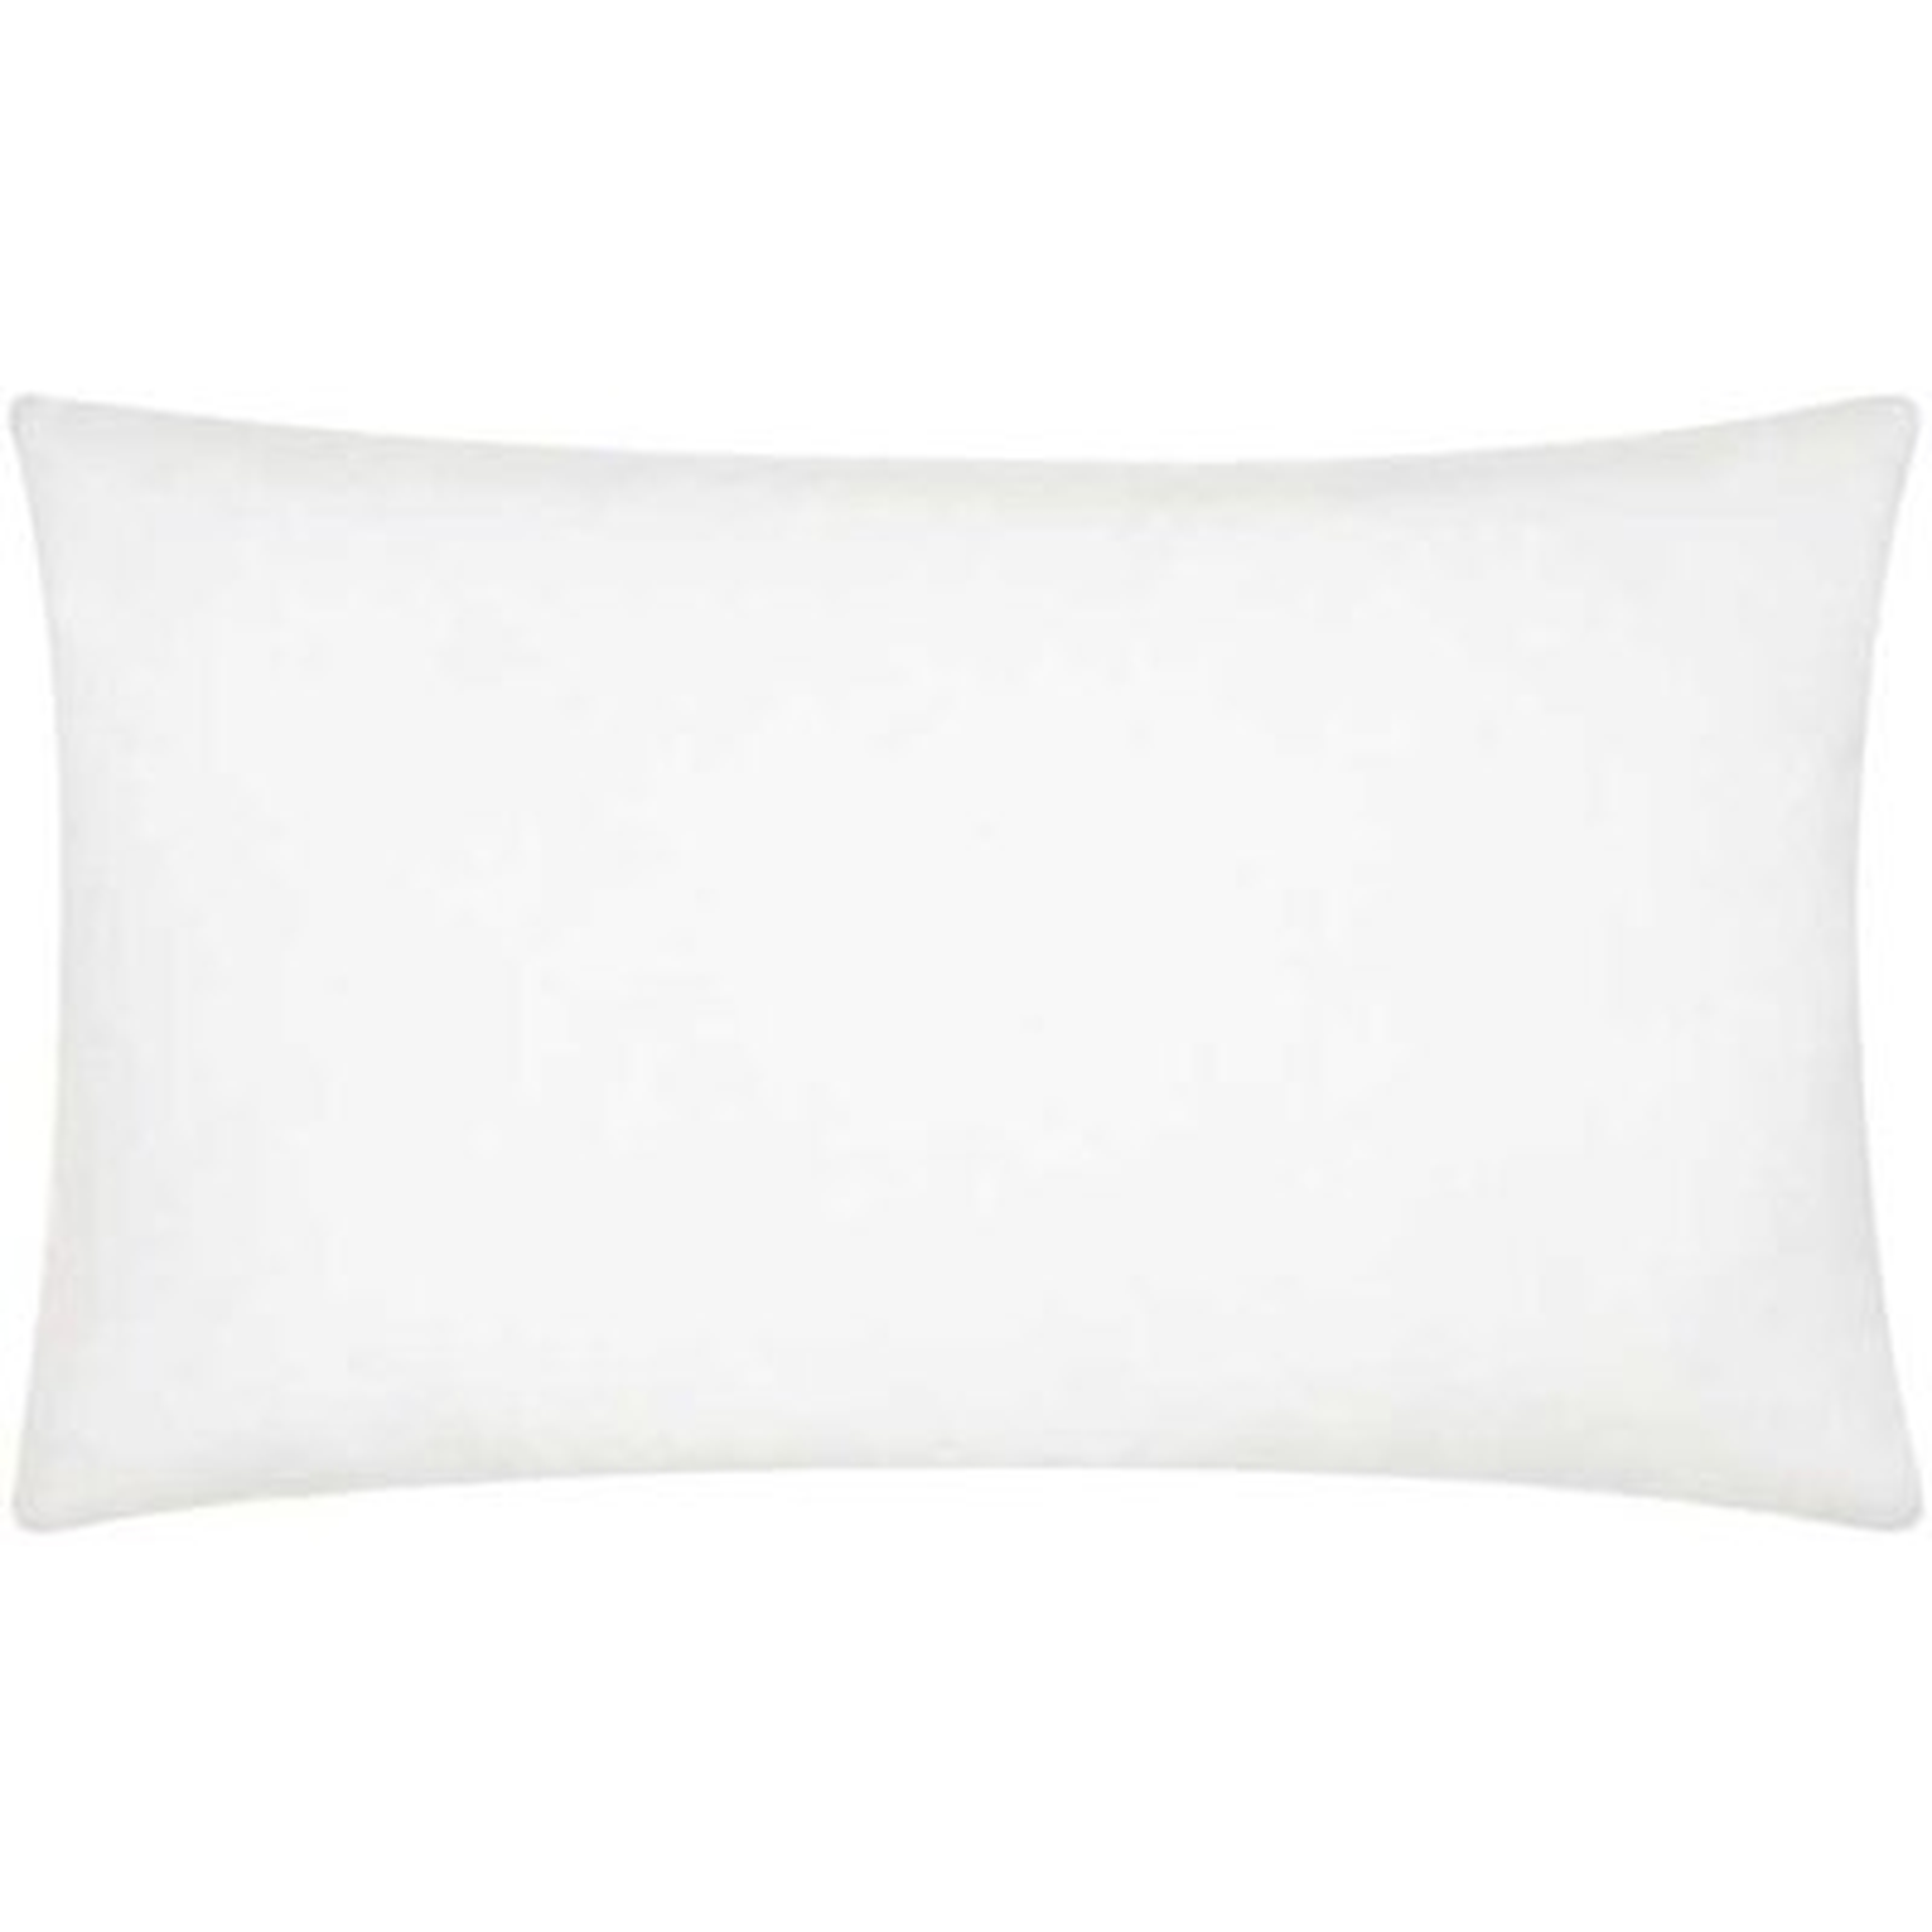 Ramsdell Lumbar Pillow Insert 14 x 24 - Wayfair